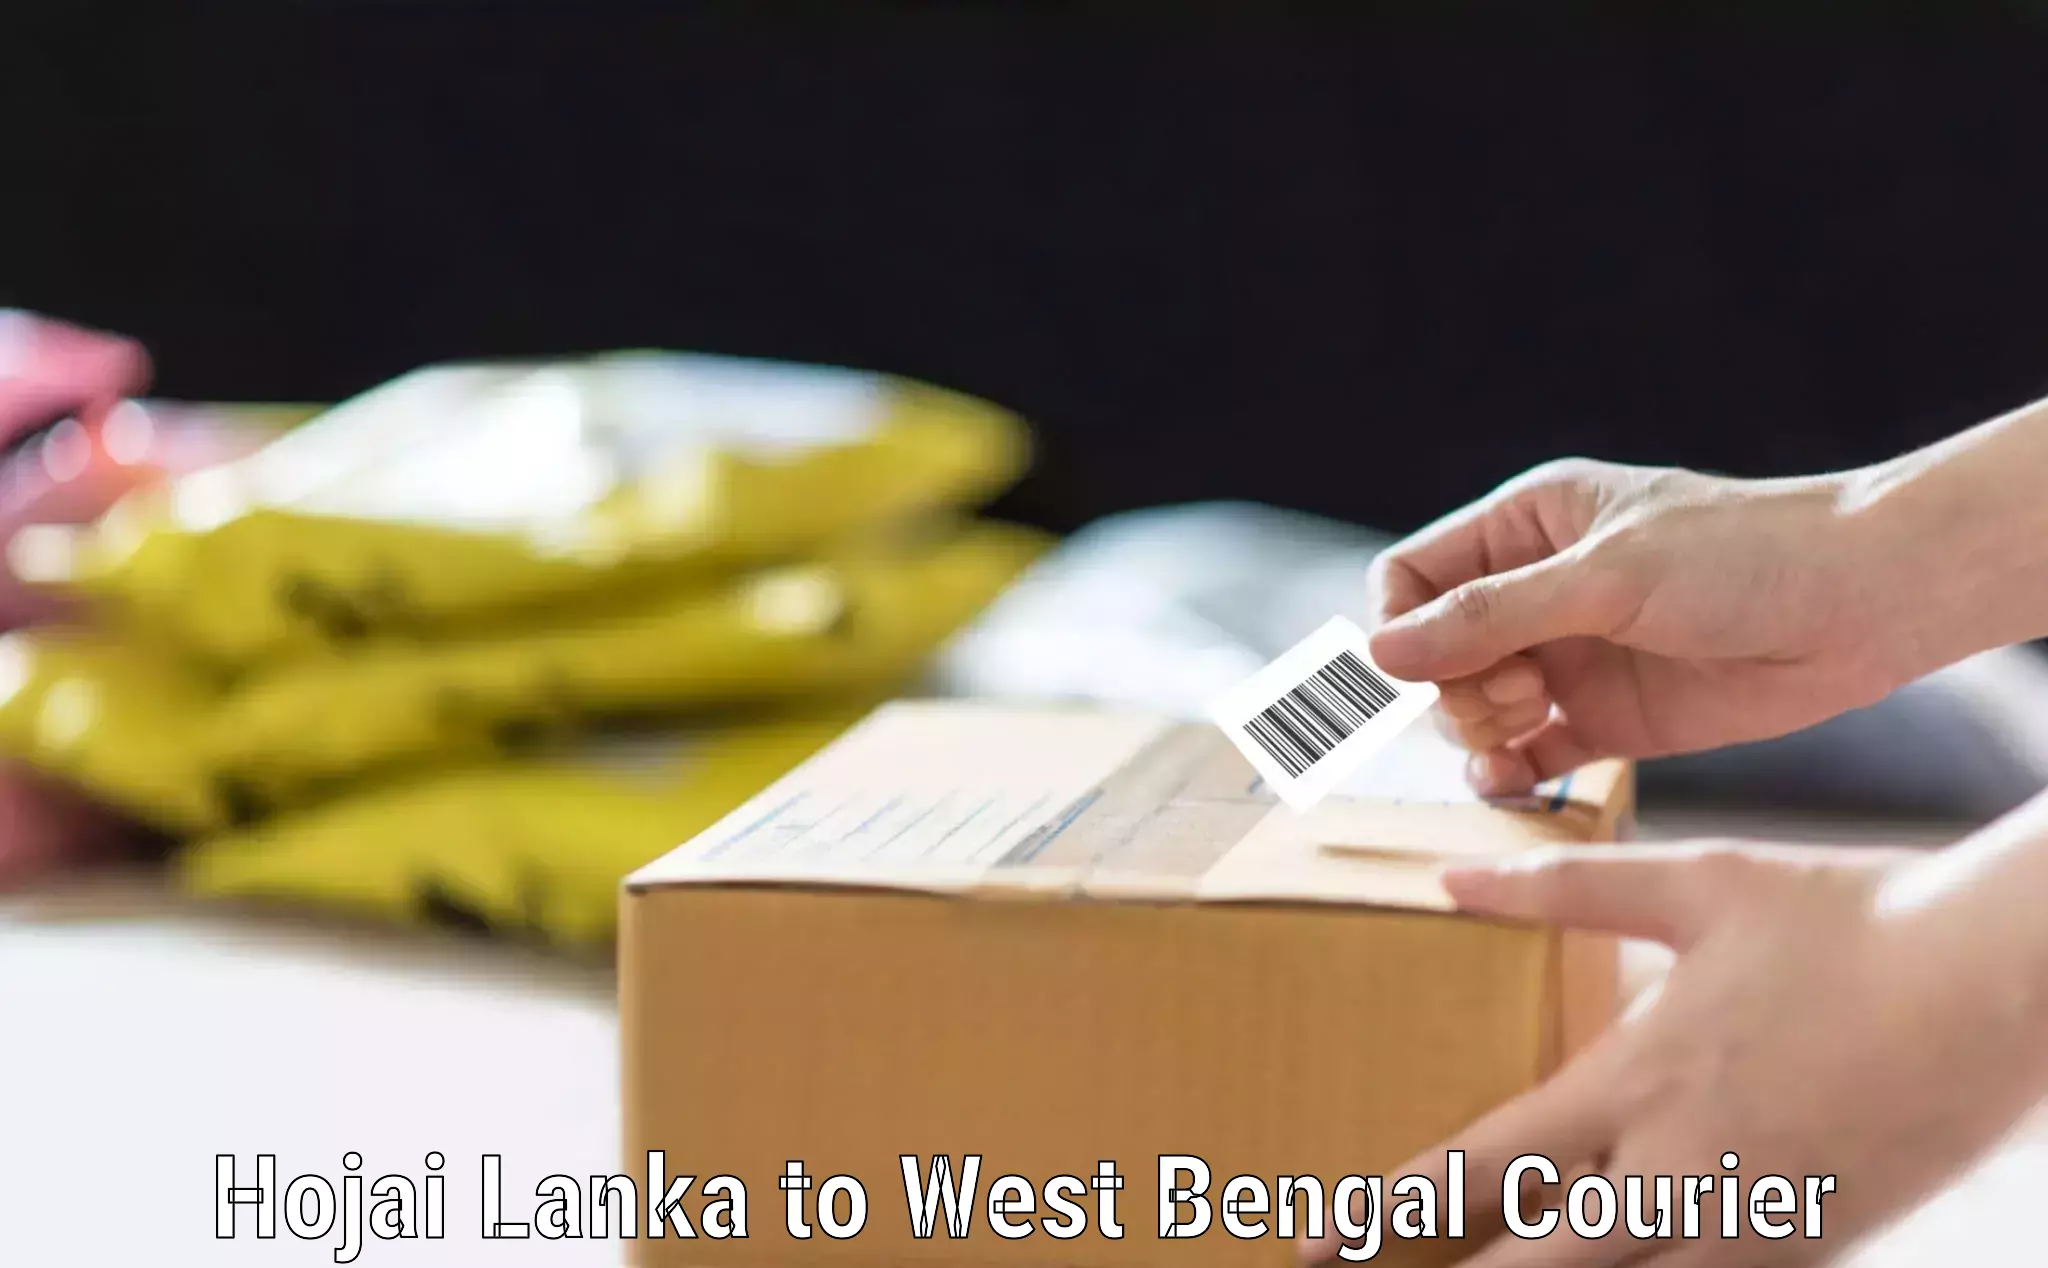 Door-to-door baggage service Hojai Lanka to West Bengal